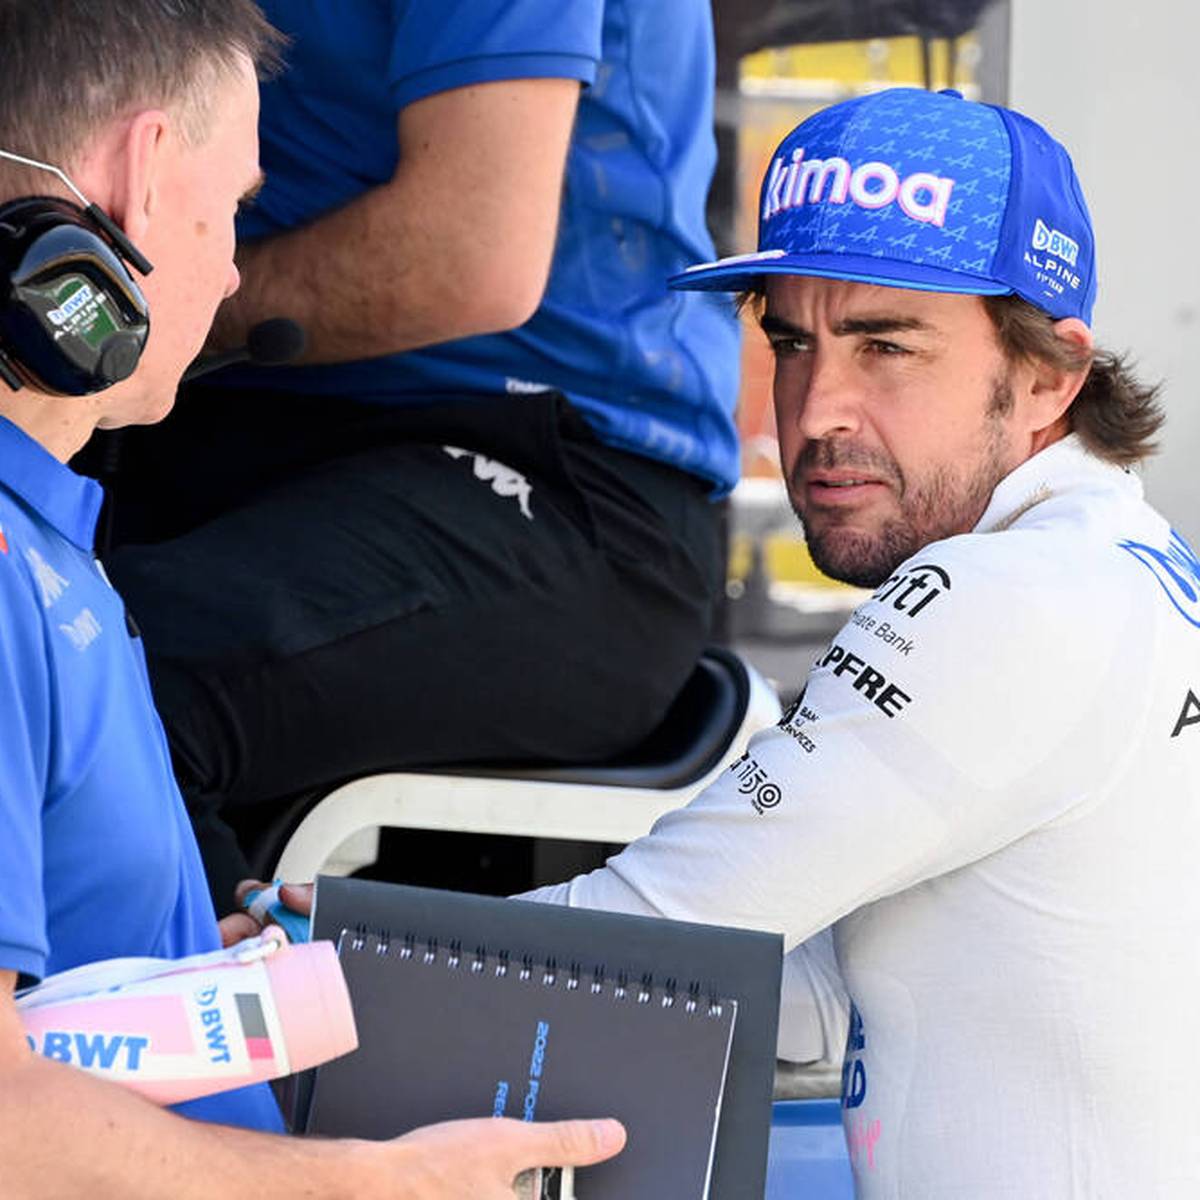 Fernando Alonso echauffiert sich über die Rennleitung beim Großen Preis von Miami. Grund hierfür ist eine aus seiner Sicht zu Unrecht ausgesprochene Zeitstrafe.